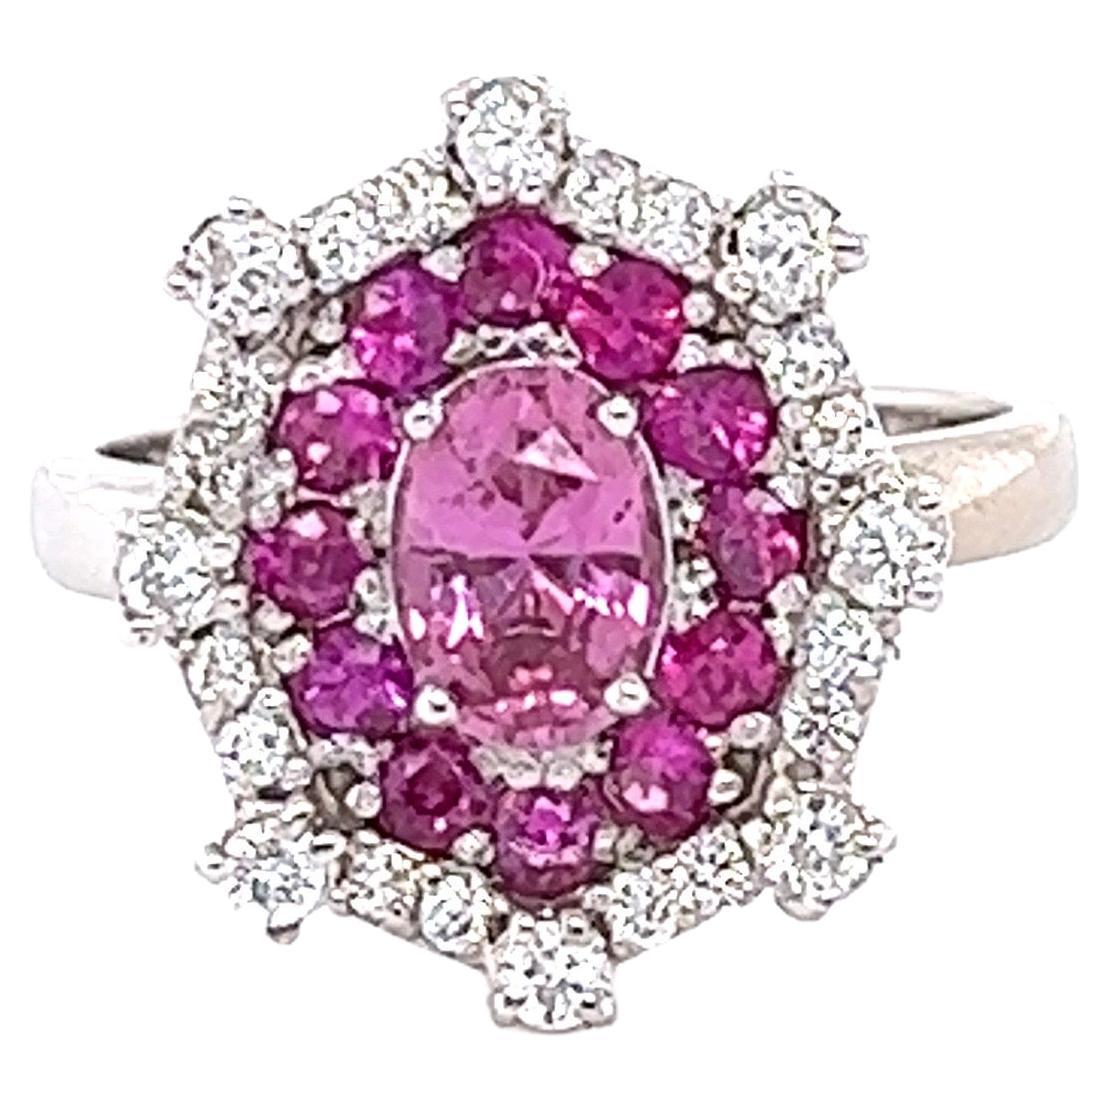 2.01 Carat Pink Sapphire Diamond 14 Karat White Gold Cocktail Ring